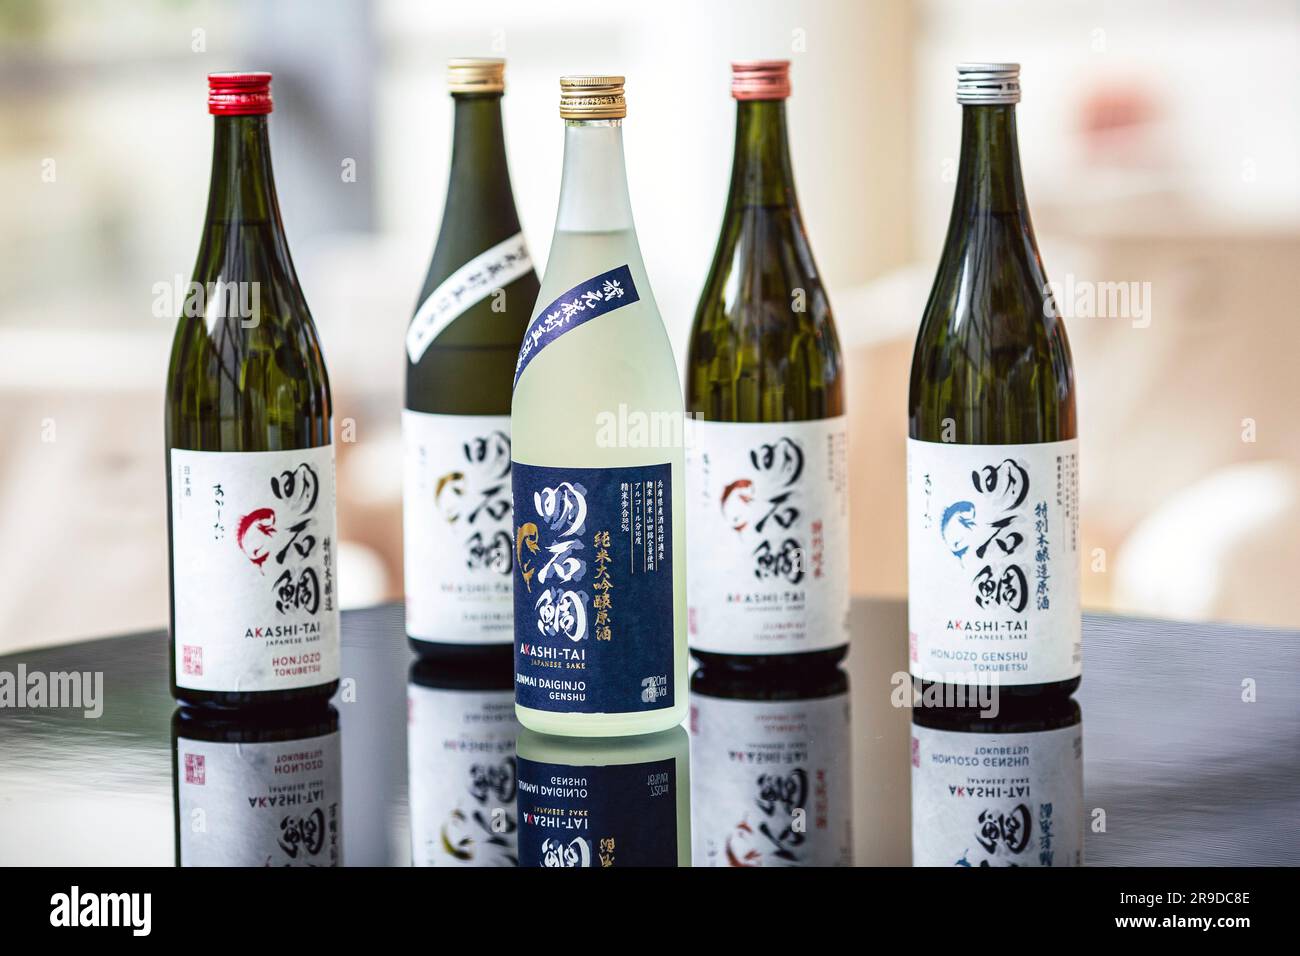 Sake-Flaschen auf dem Regal, japanisches alkoholisches Getränk, Bar, Restaurant, Hintergrundveranstaltung Stockfoto